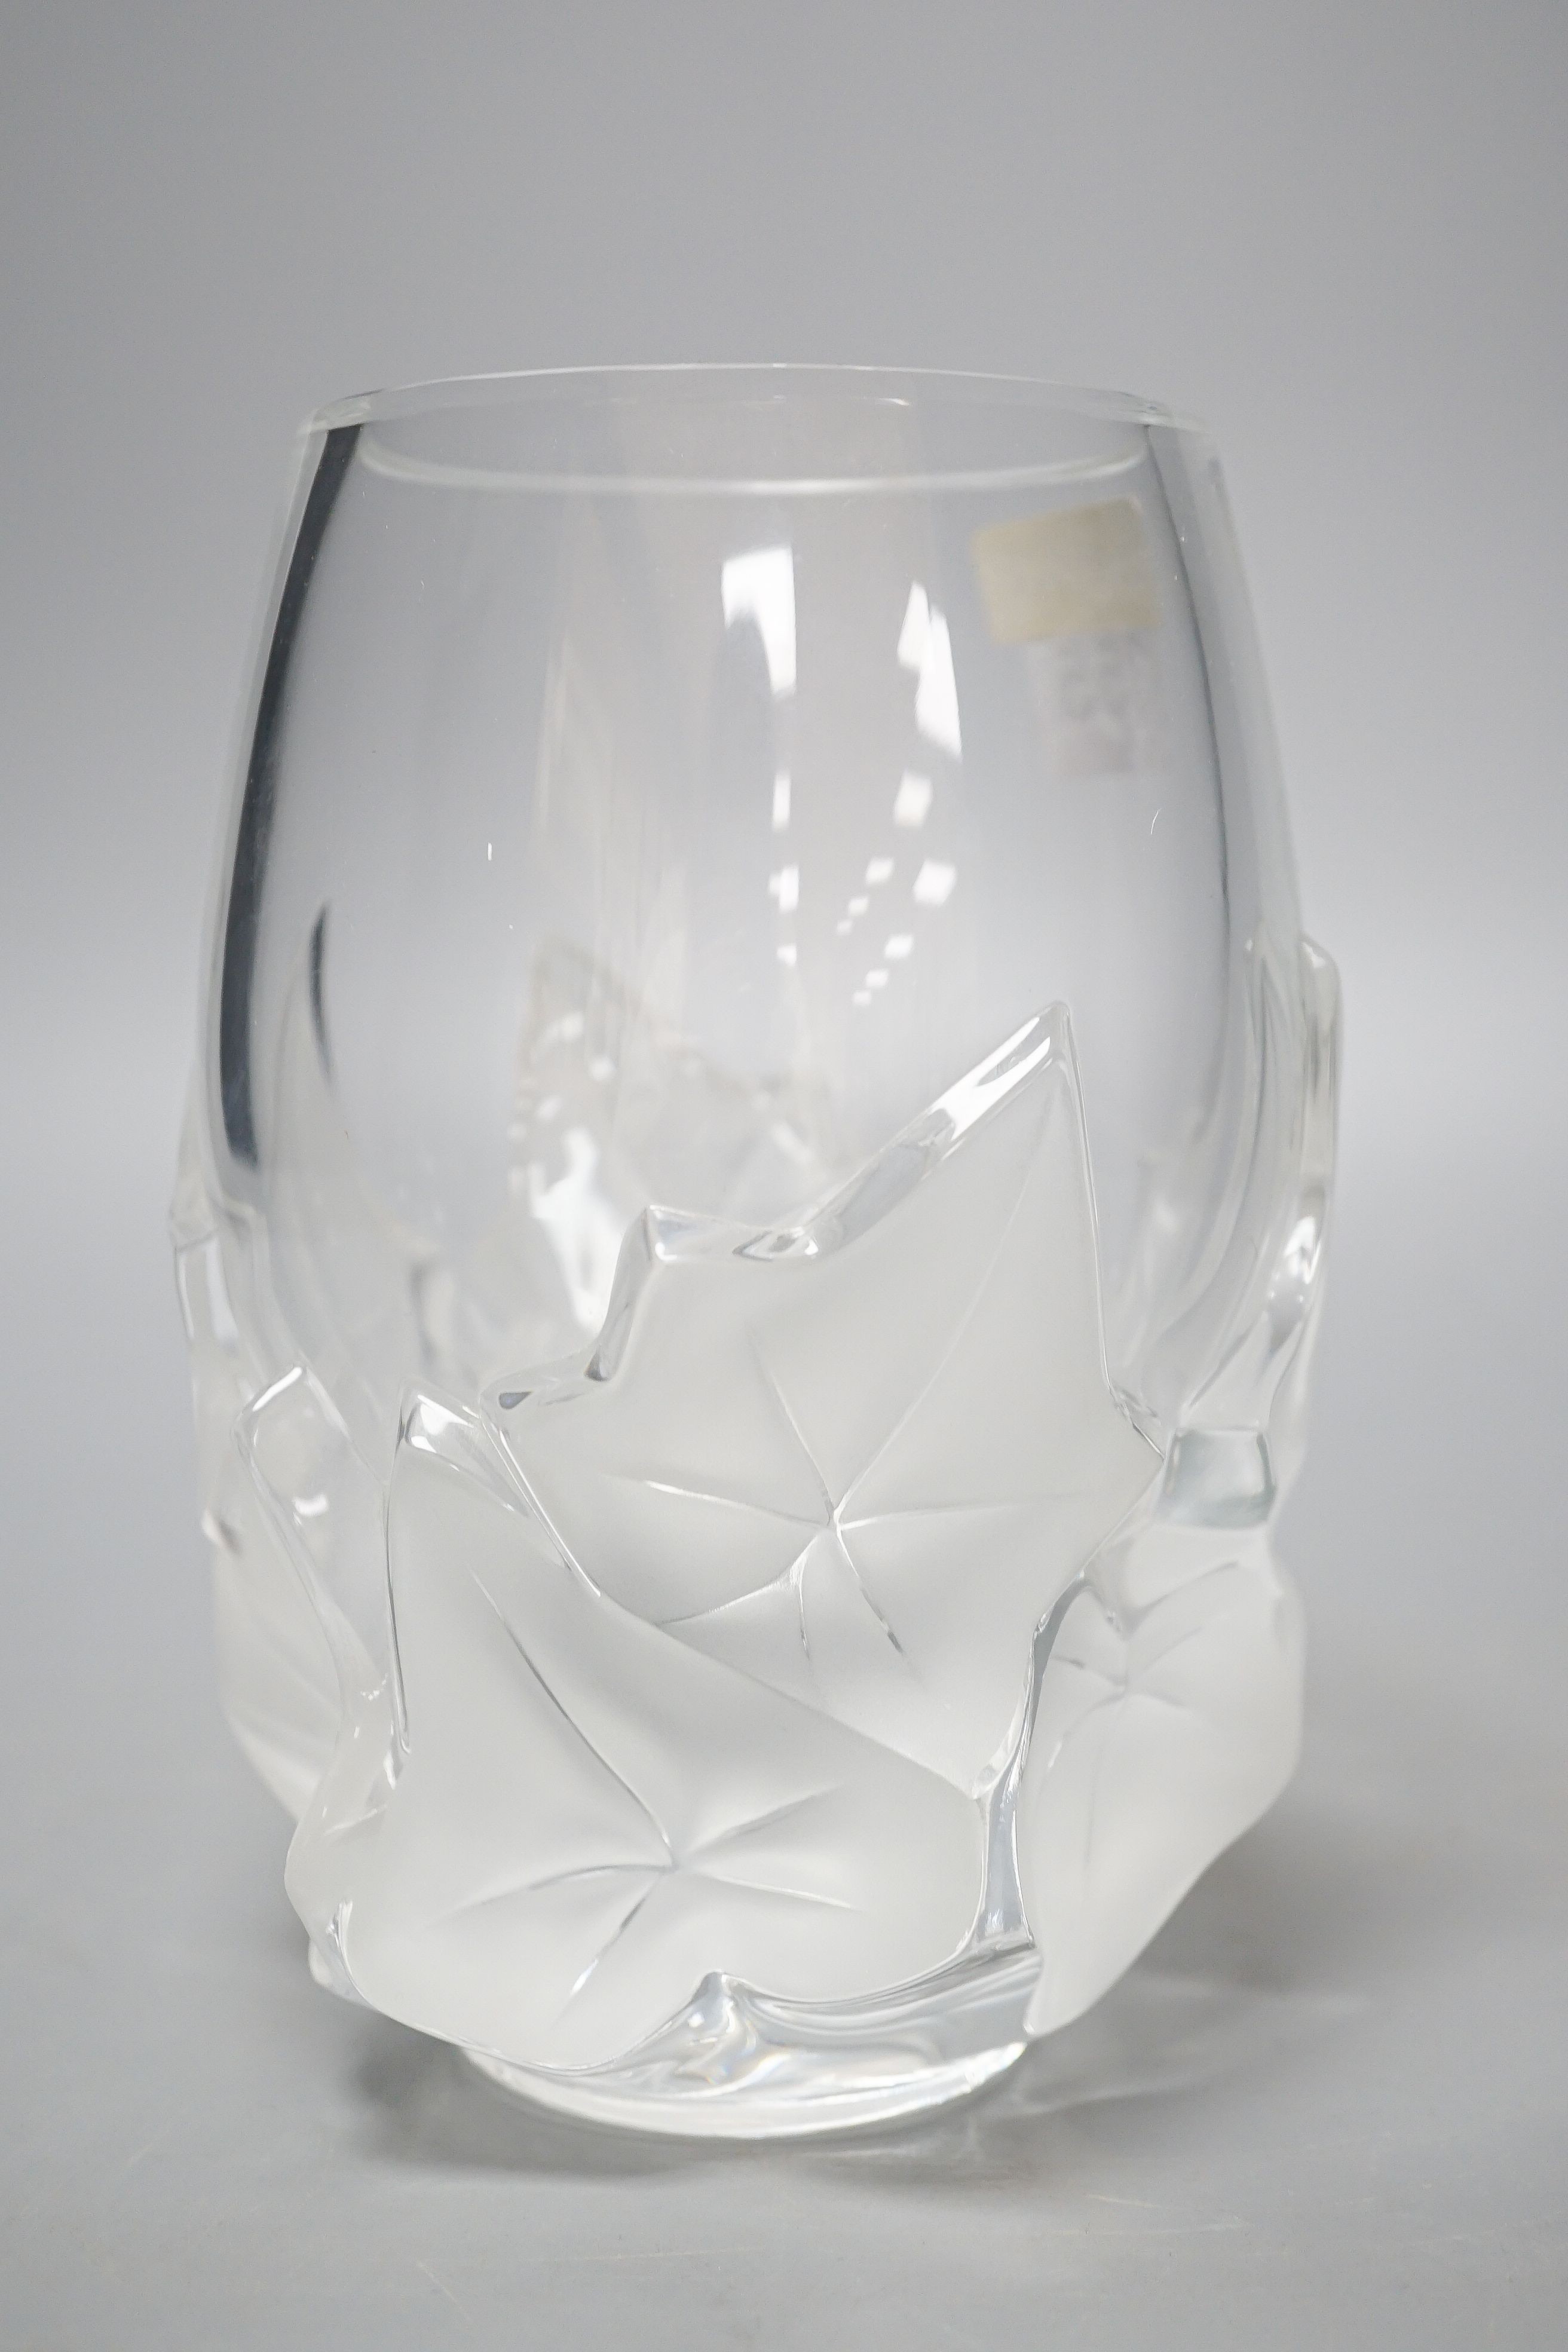 A modern Lalique glass vase 17cm